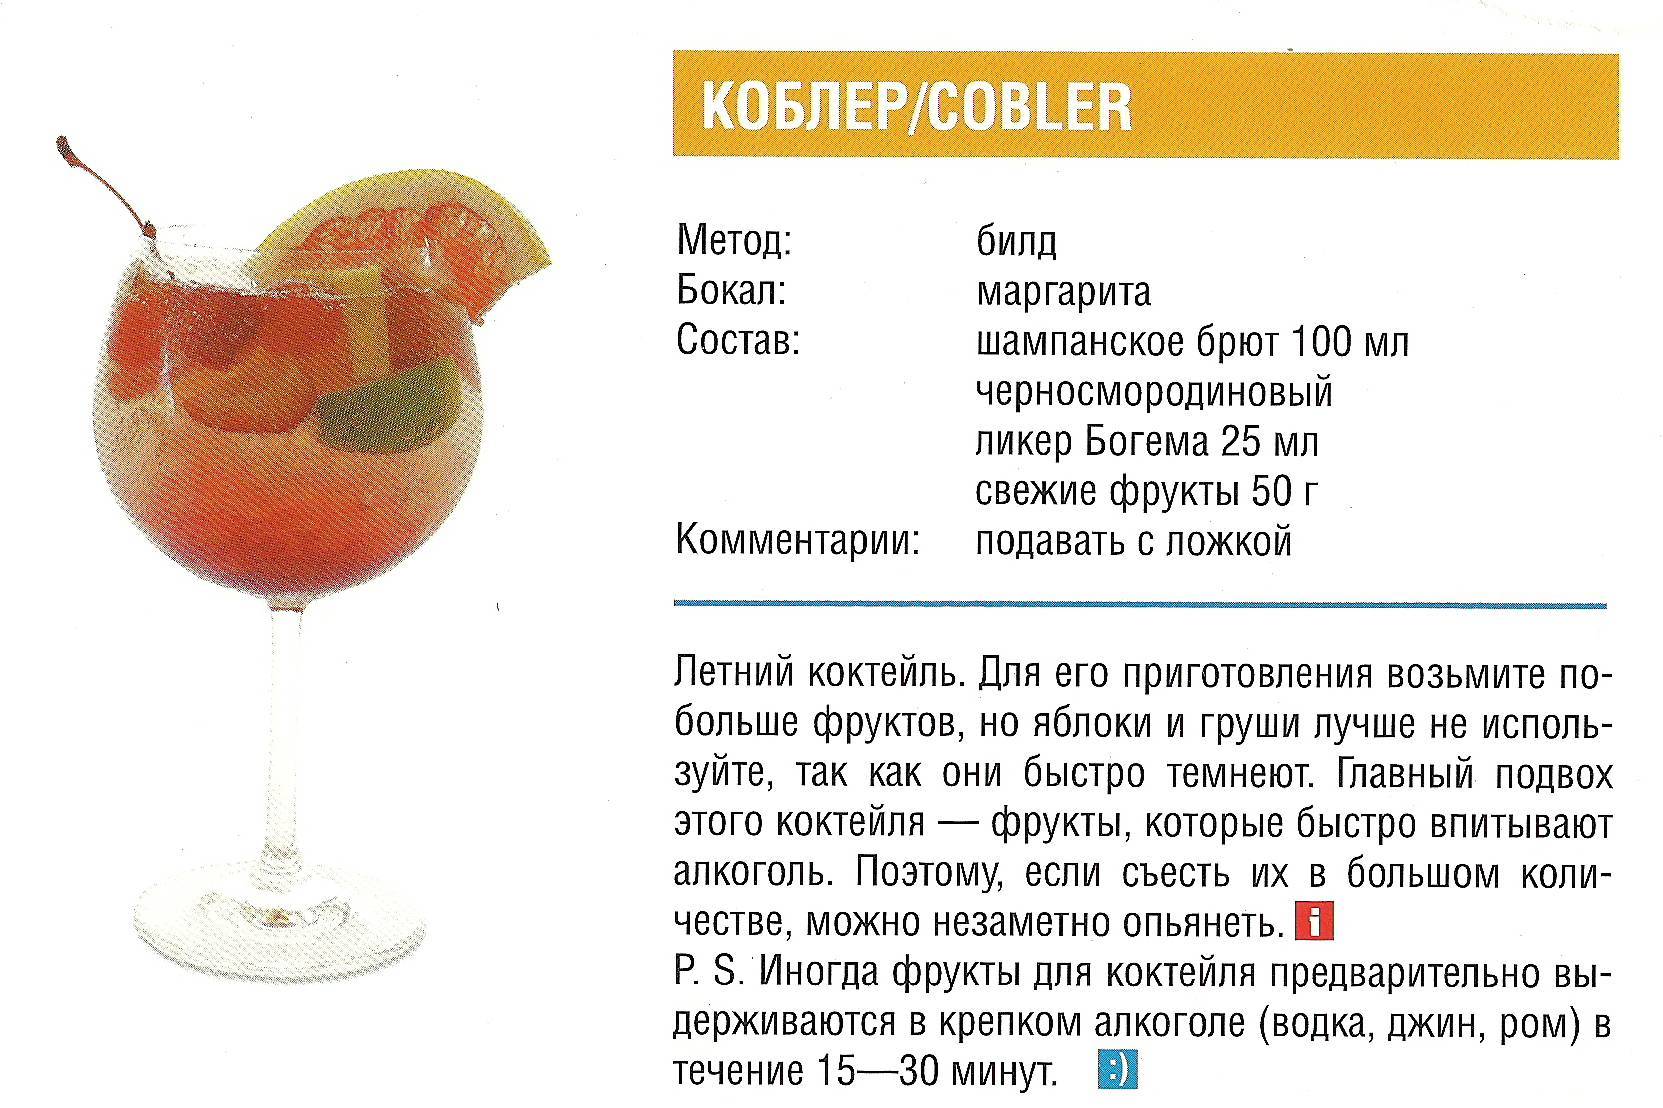 Как сделать коктейль шампань коблер по советскому рецепту